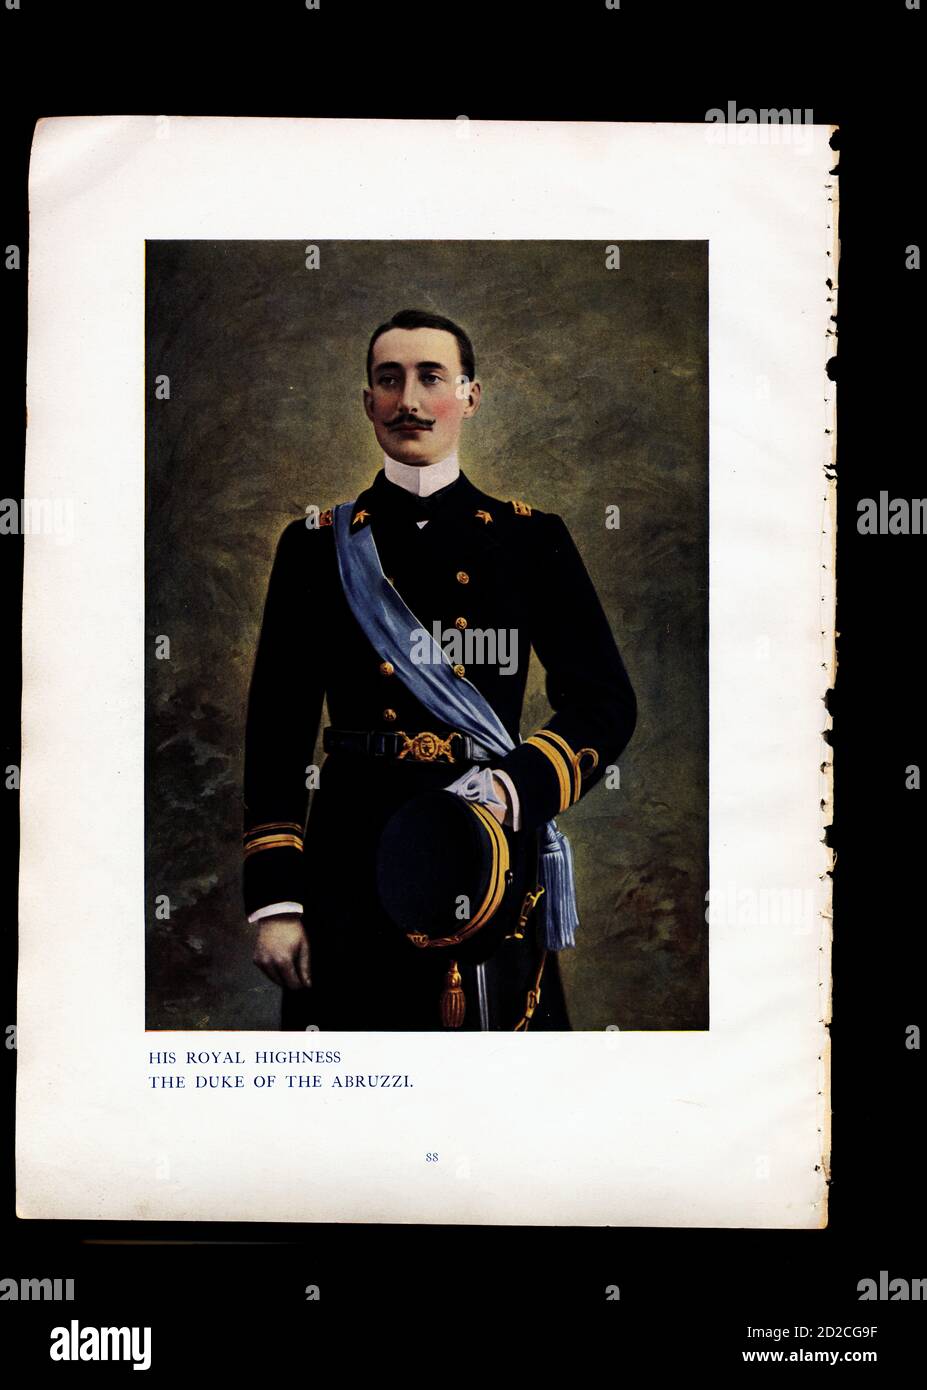 Ritratto Chromolitografico del principe Luigi Amedeo (29 gennaio 1873 - 18 marzo 1933). Era un nobile italiano e duca degli Abruzzi. Immagine publ Foto Stock